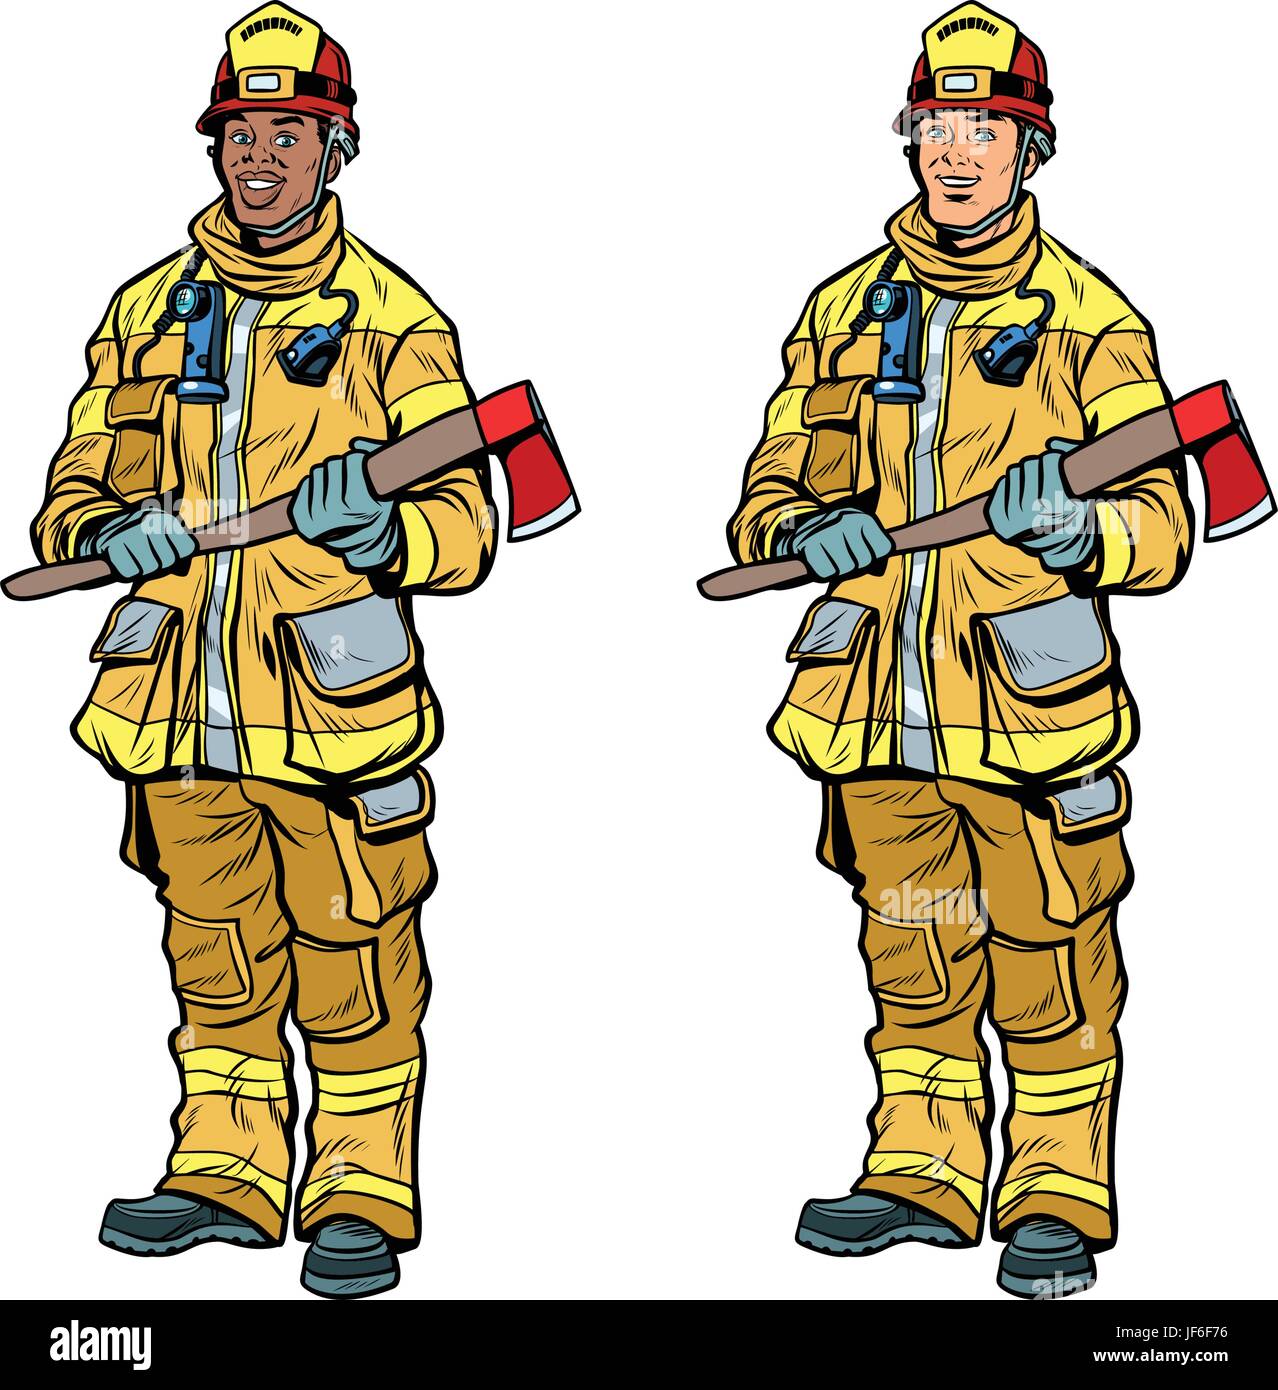 African American and Caucasian pompiers en uniforme avec des haches Illustration de Vecteur